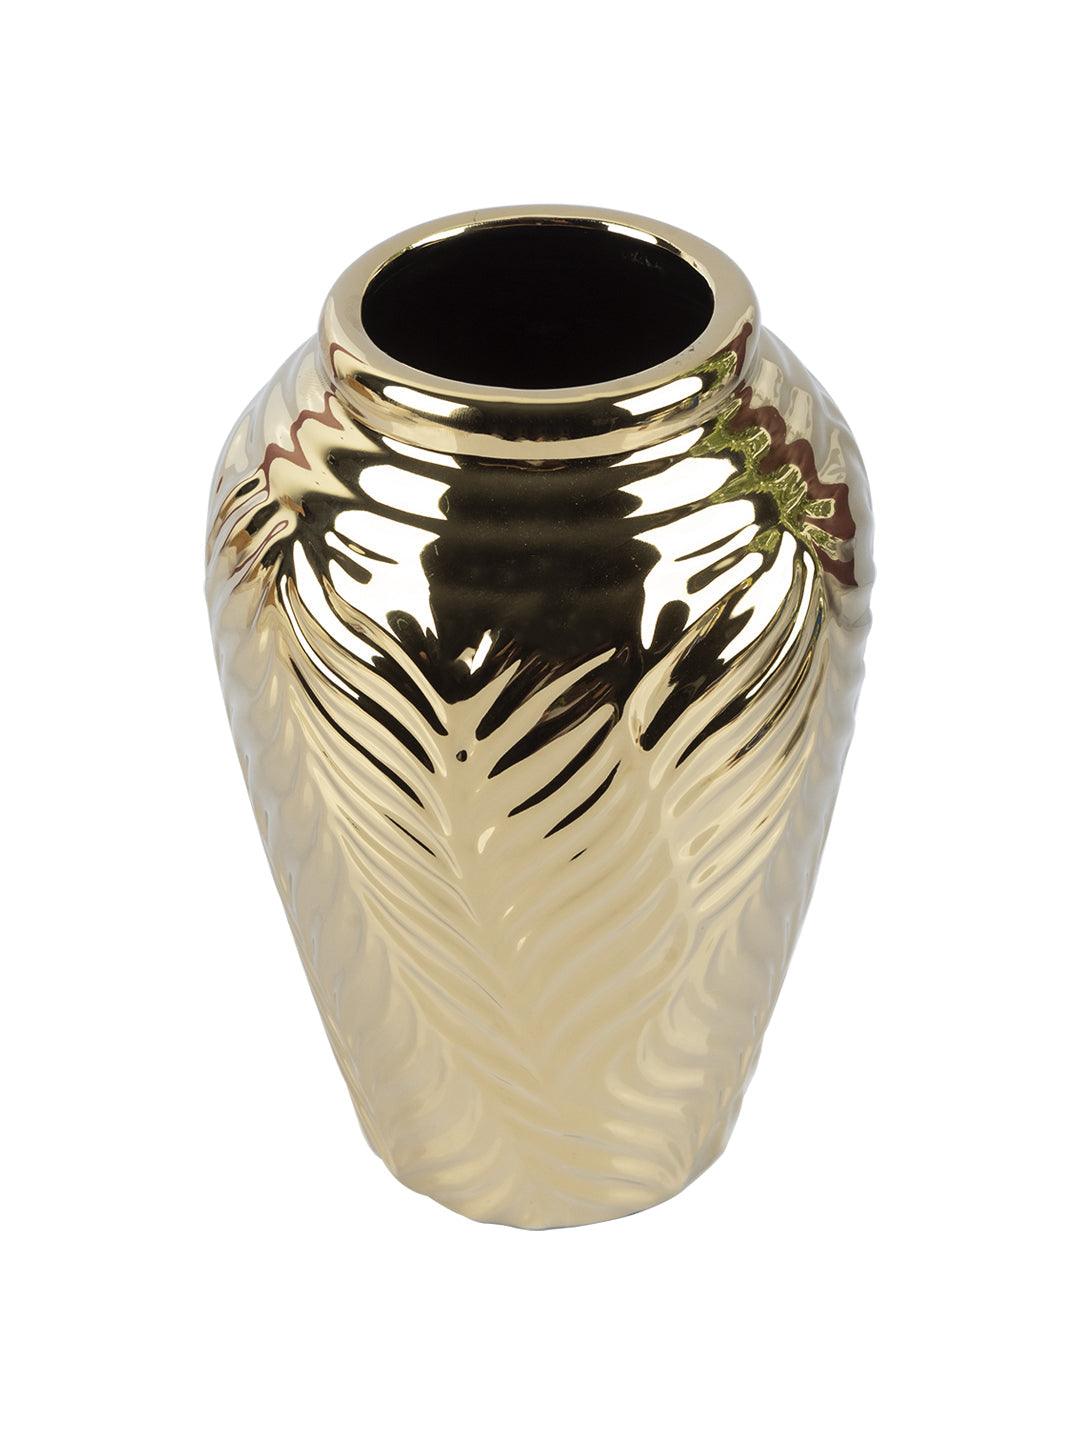 VON CASA Ceramic Gold Cyclendrical Vase - VON CASA